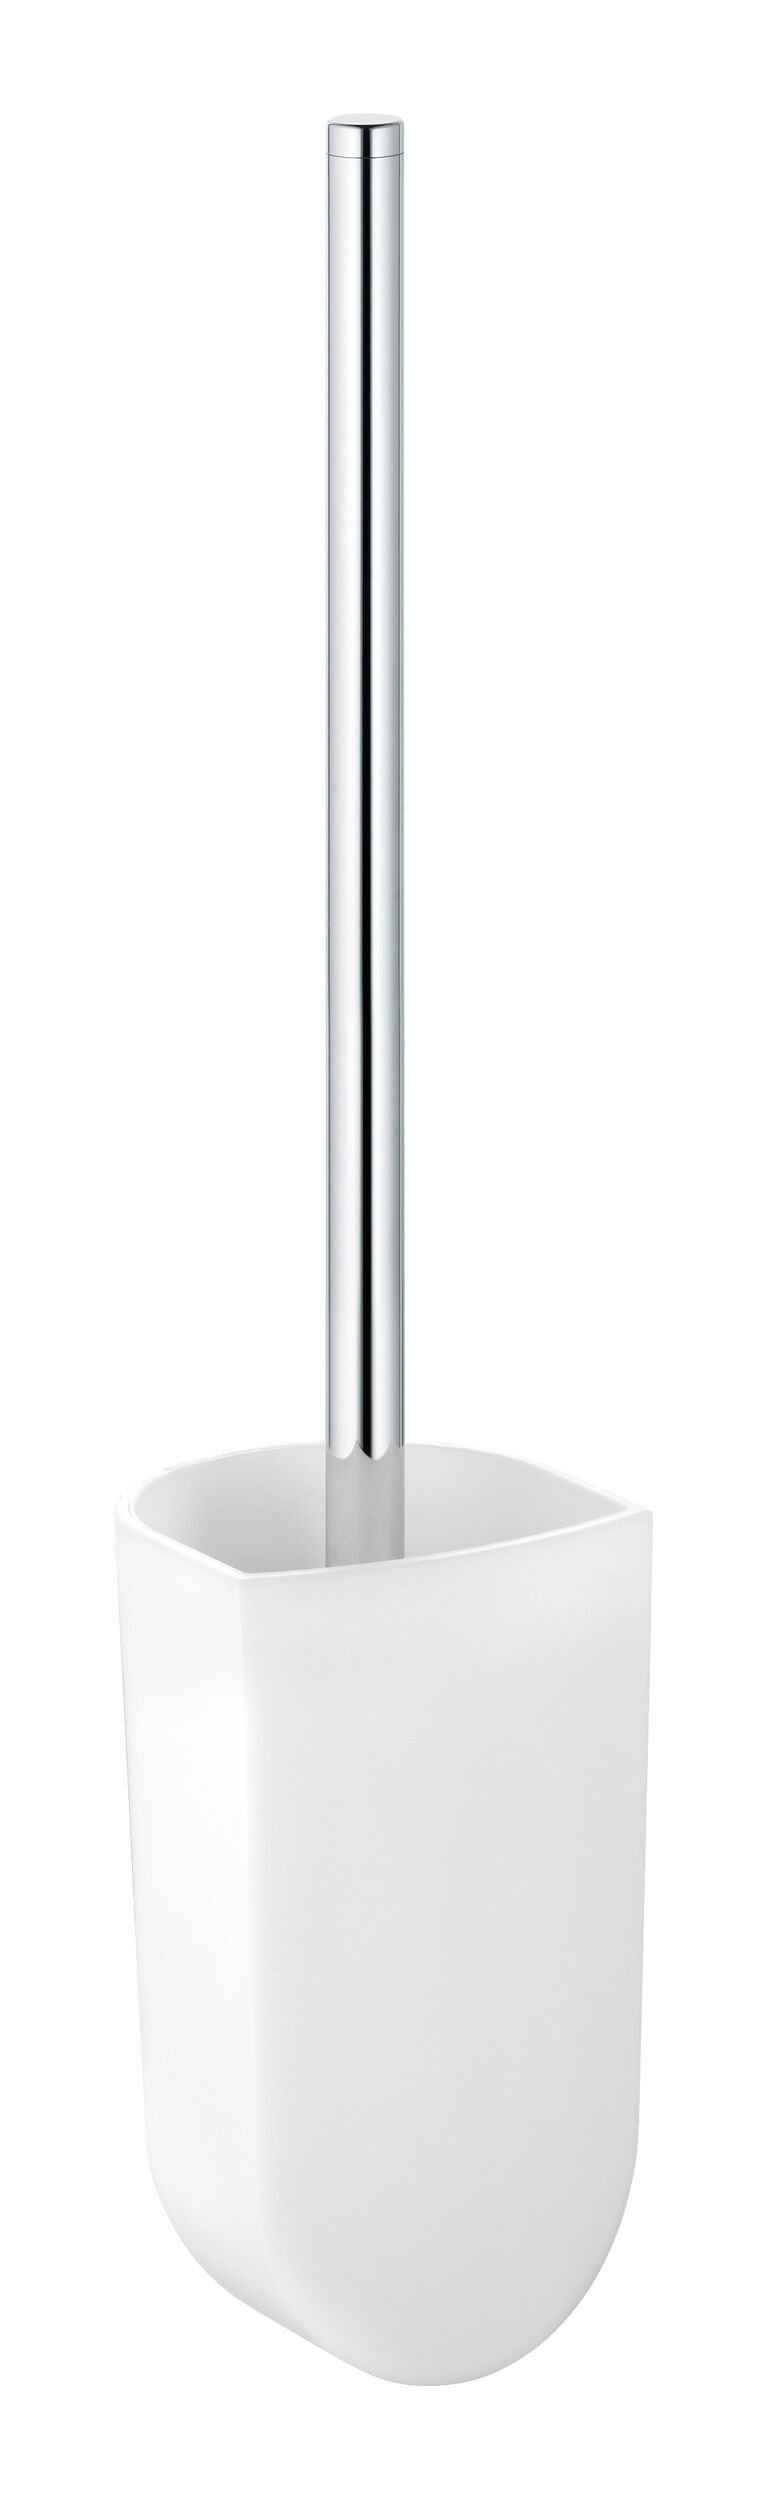 Keuco WC-Garnitur Elegance, Toilettenbürstengarnitur mit Echtkristall-Einsatz - Verchromt